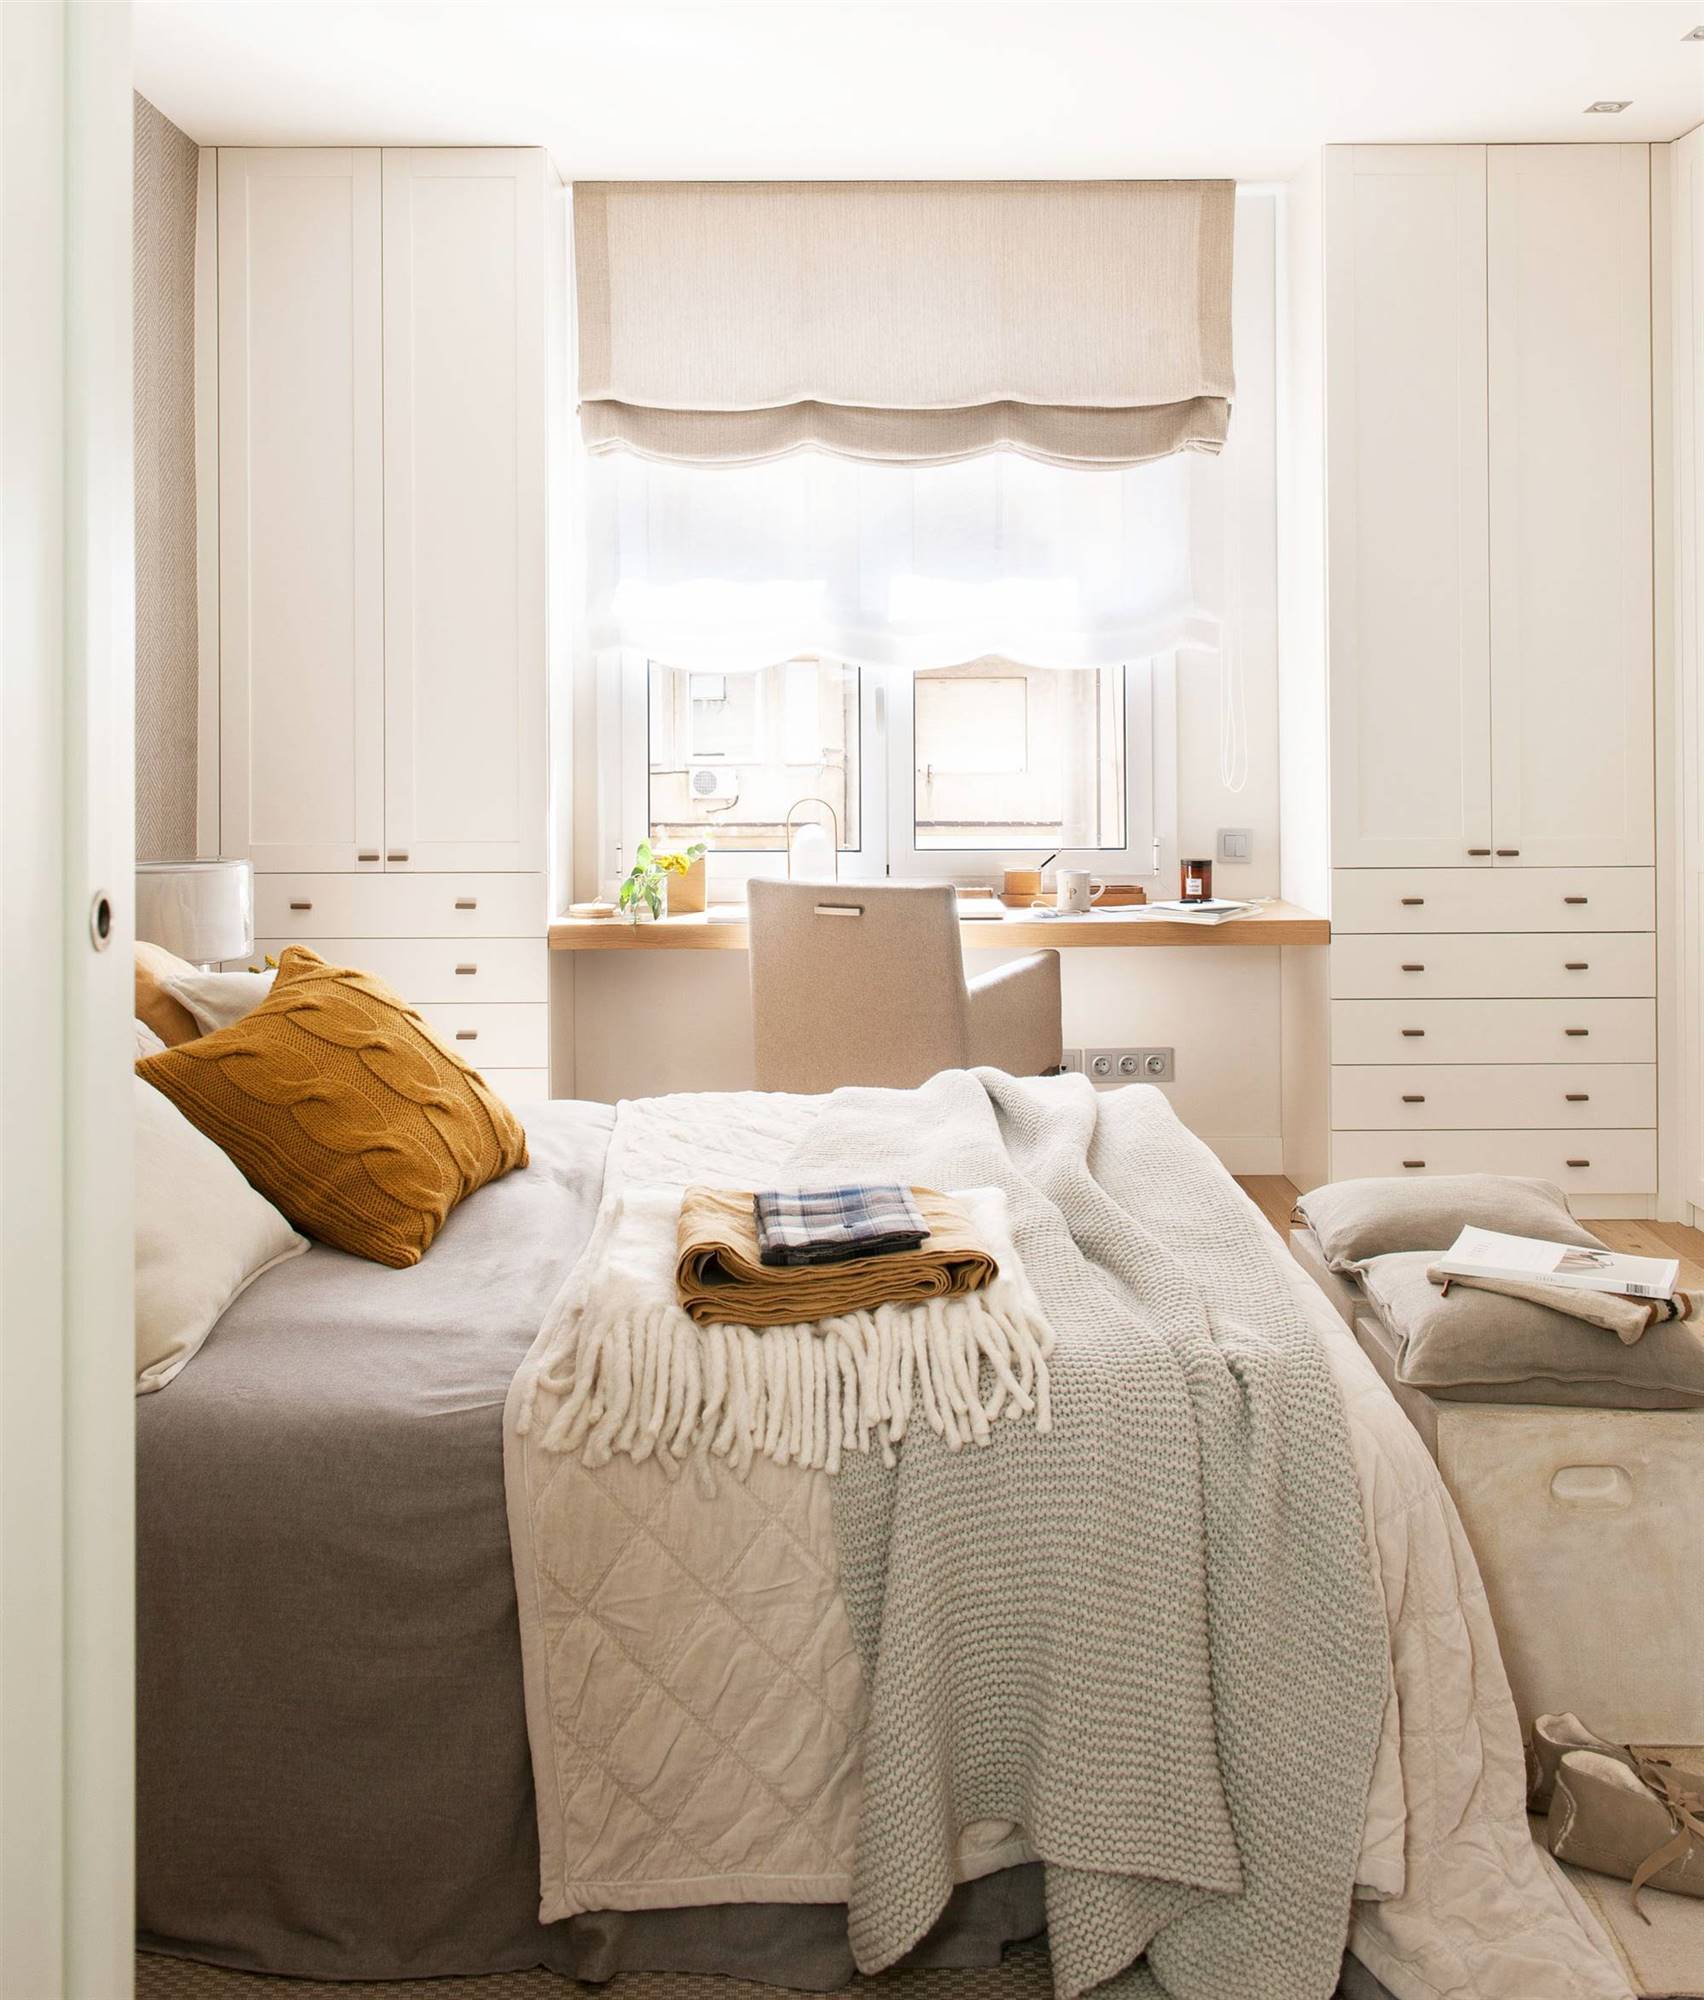 Dormitorio con armarios gemelos a cada lado de ventana y zona de despacho_00495461